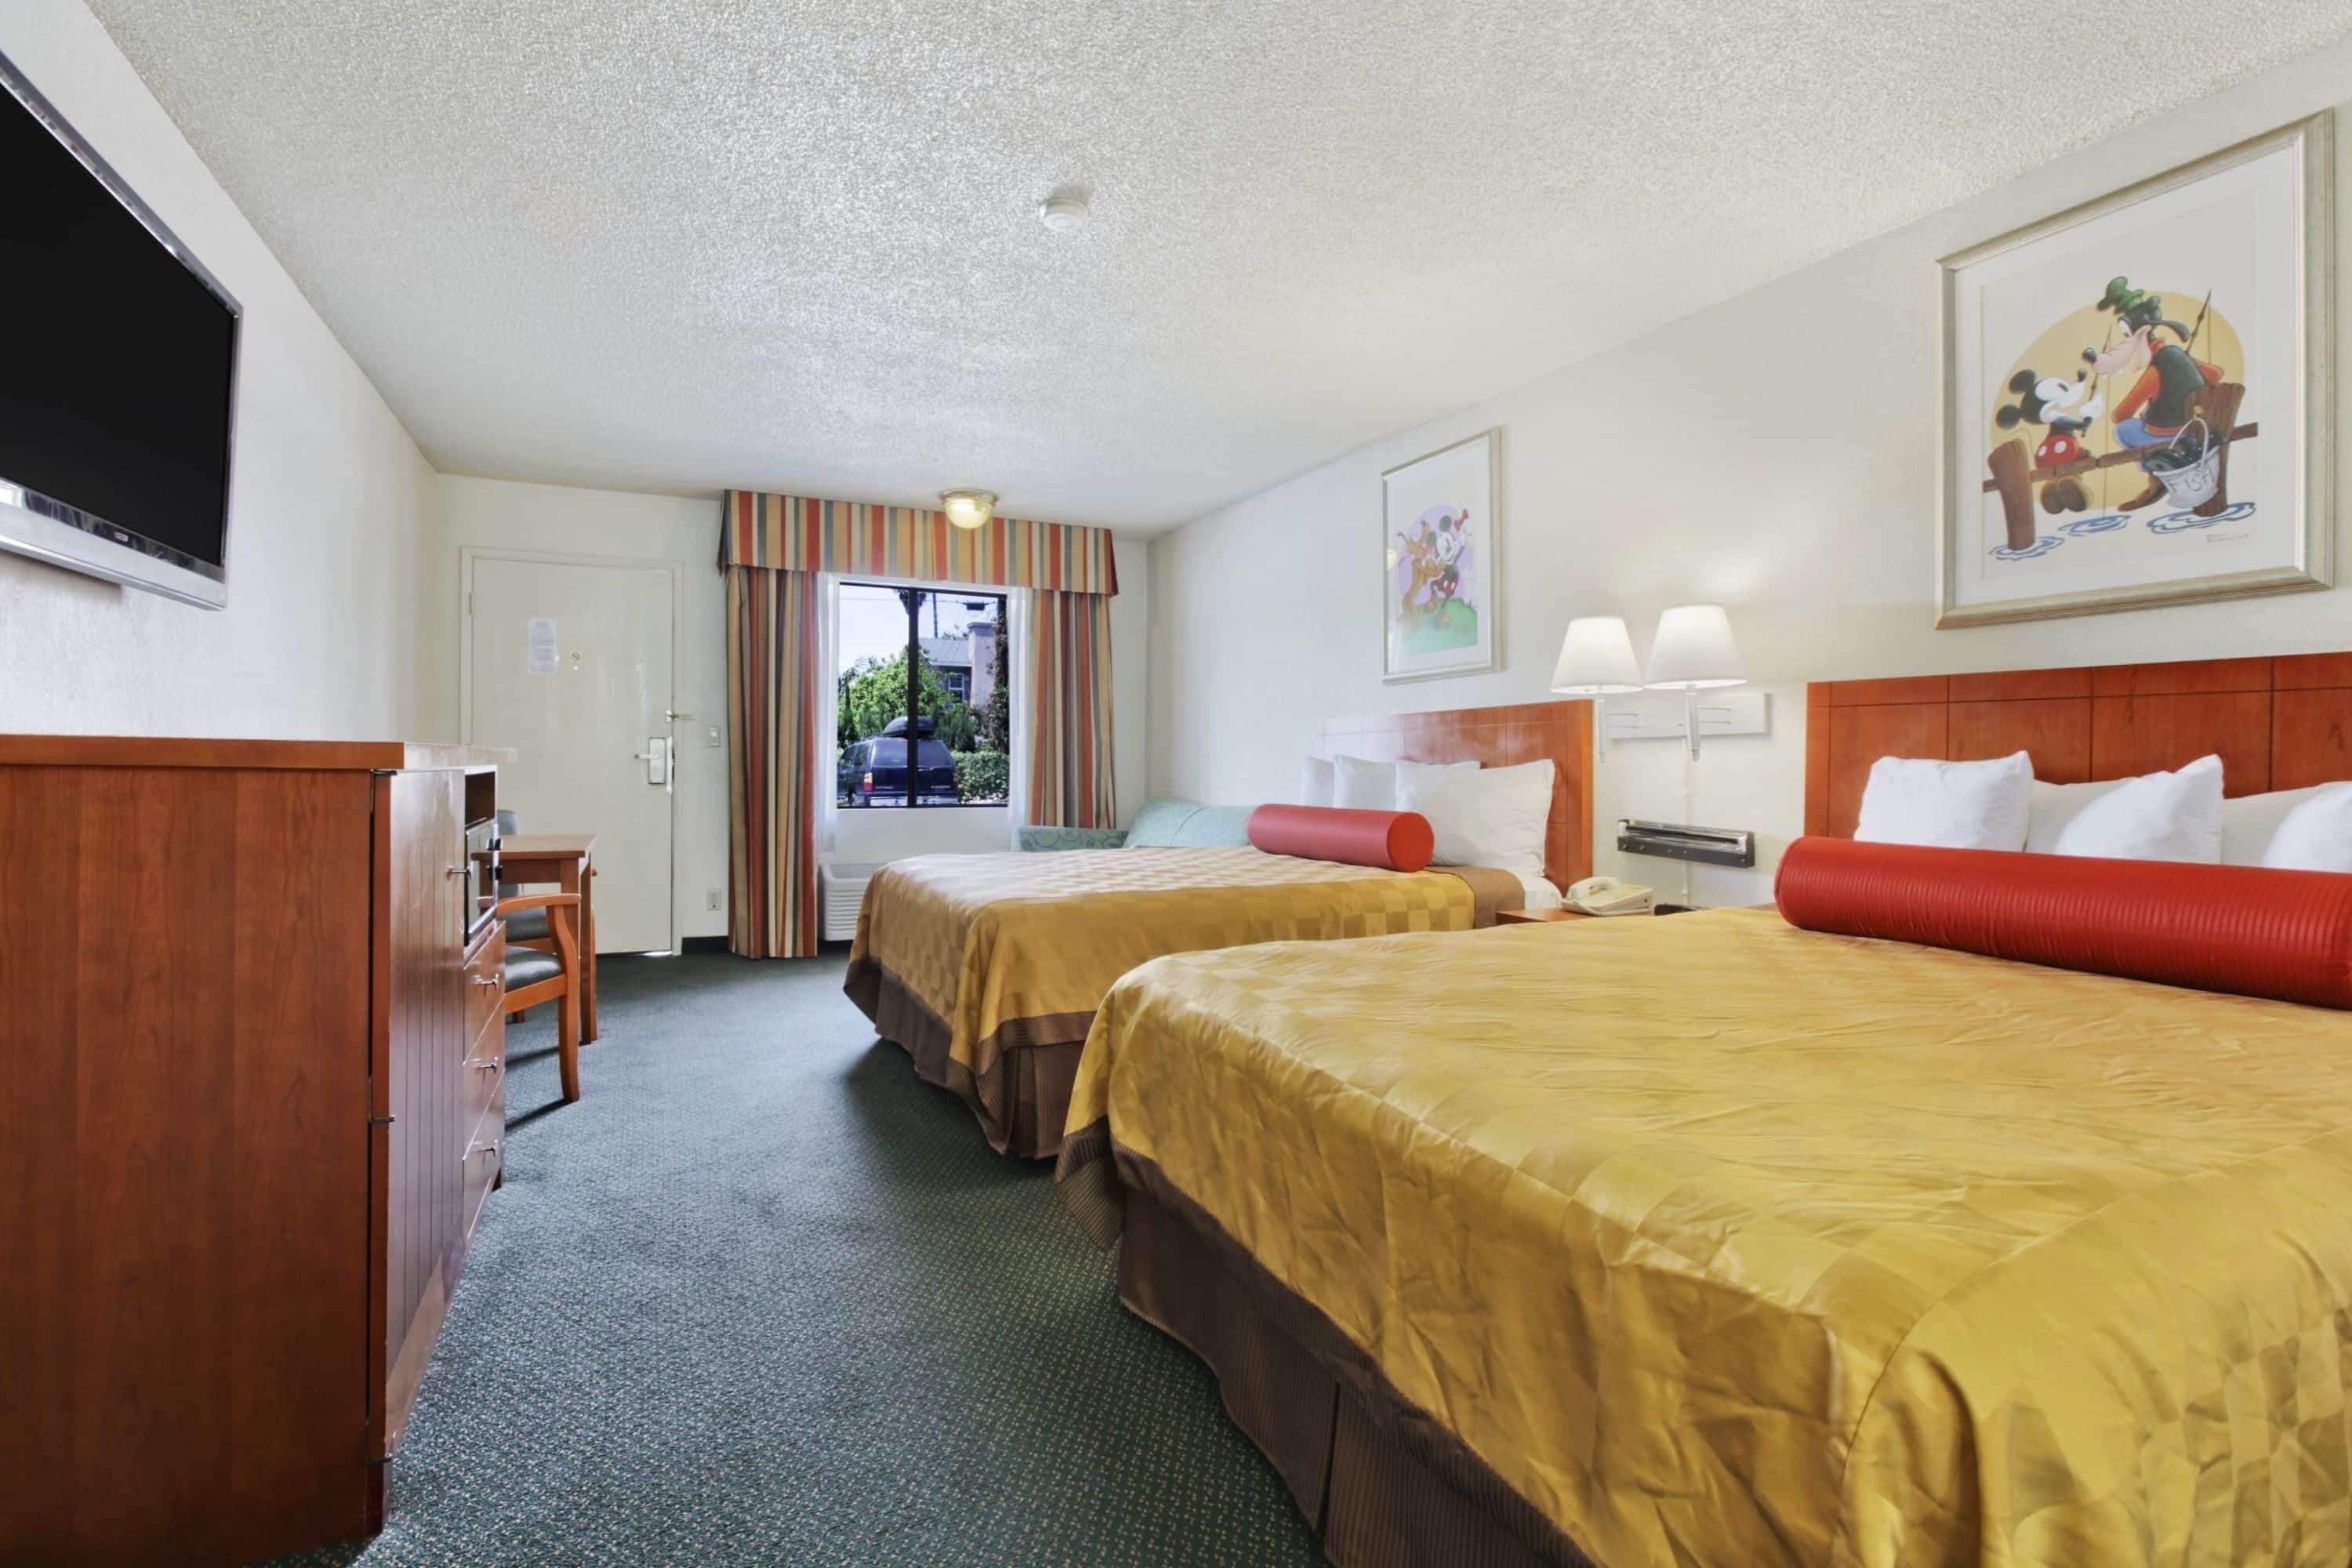 Travelodge Inn & Suites by Wyndham Anaheim on Disneyland Drive